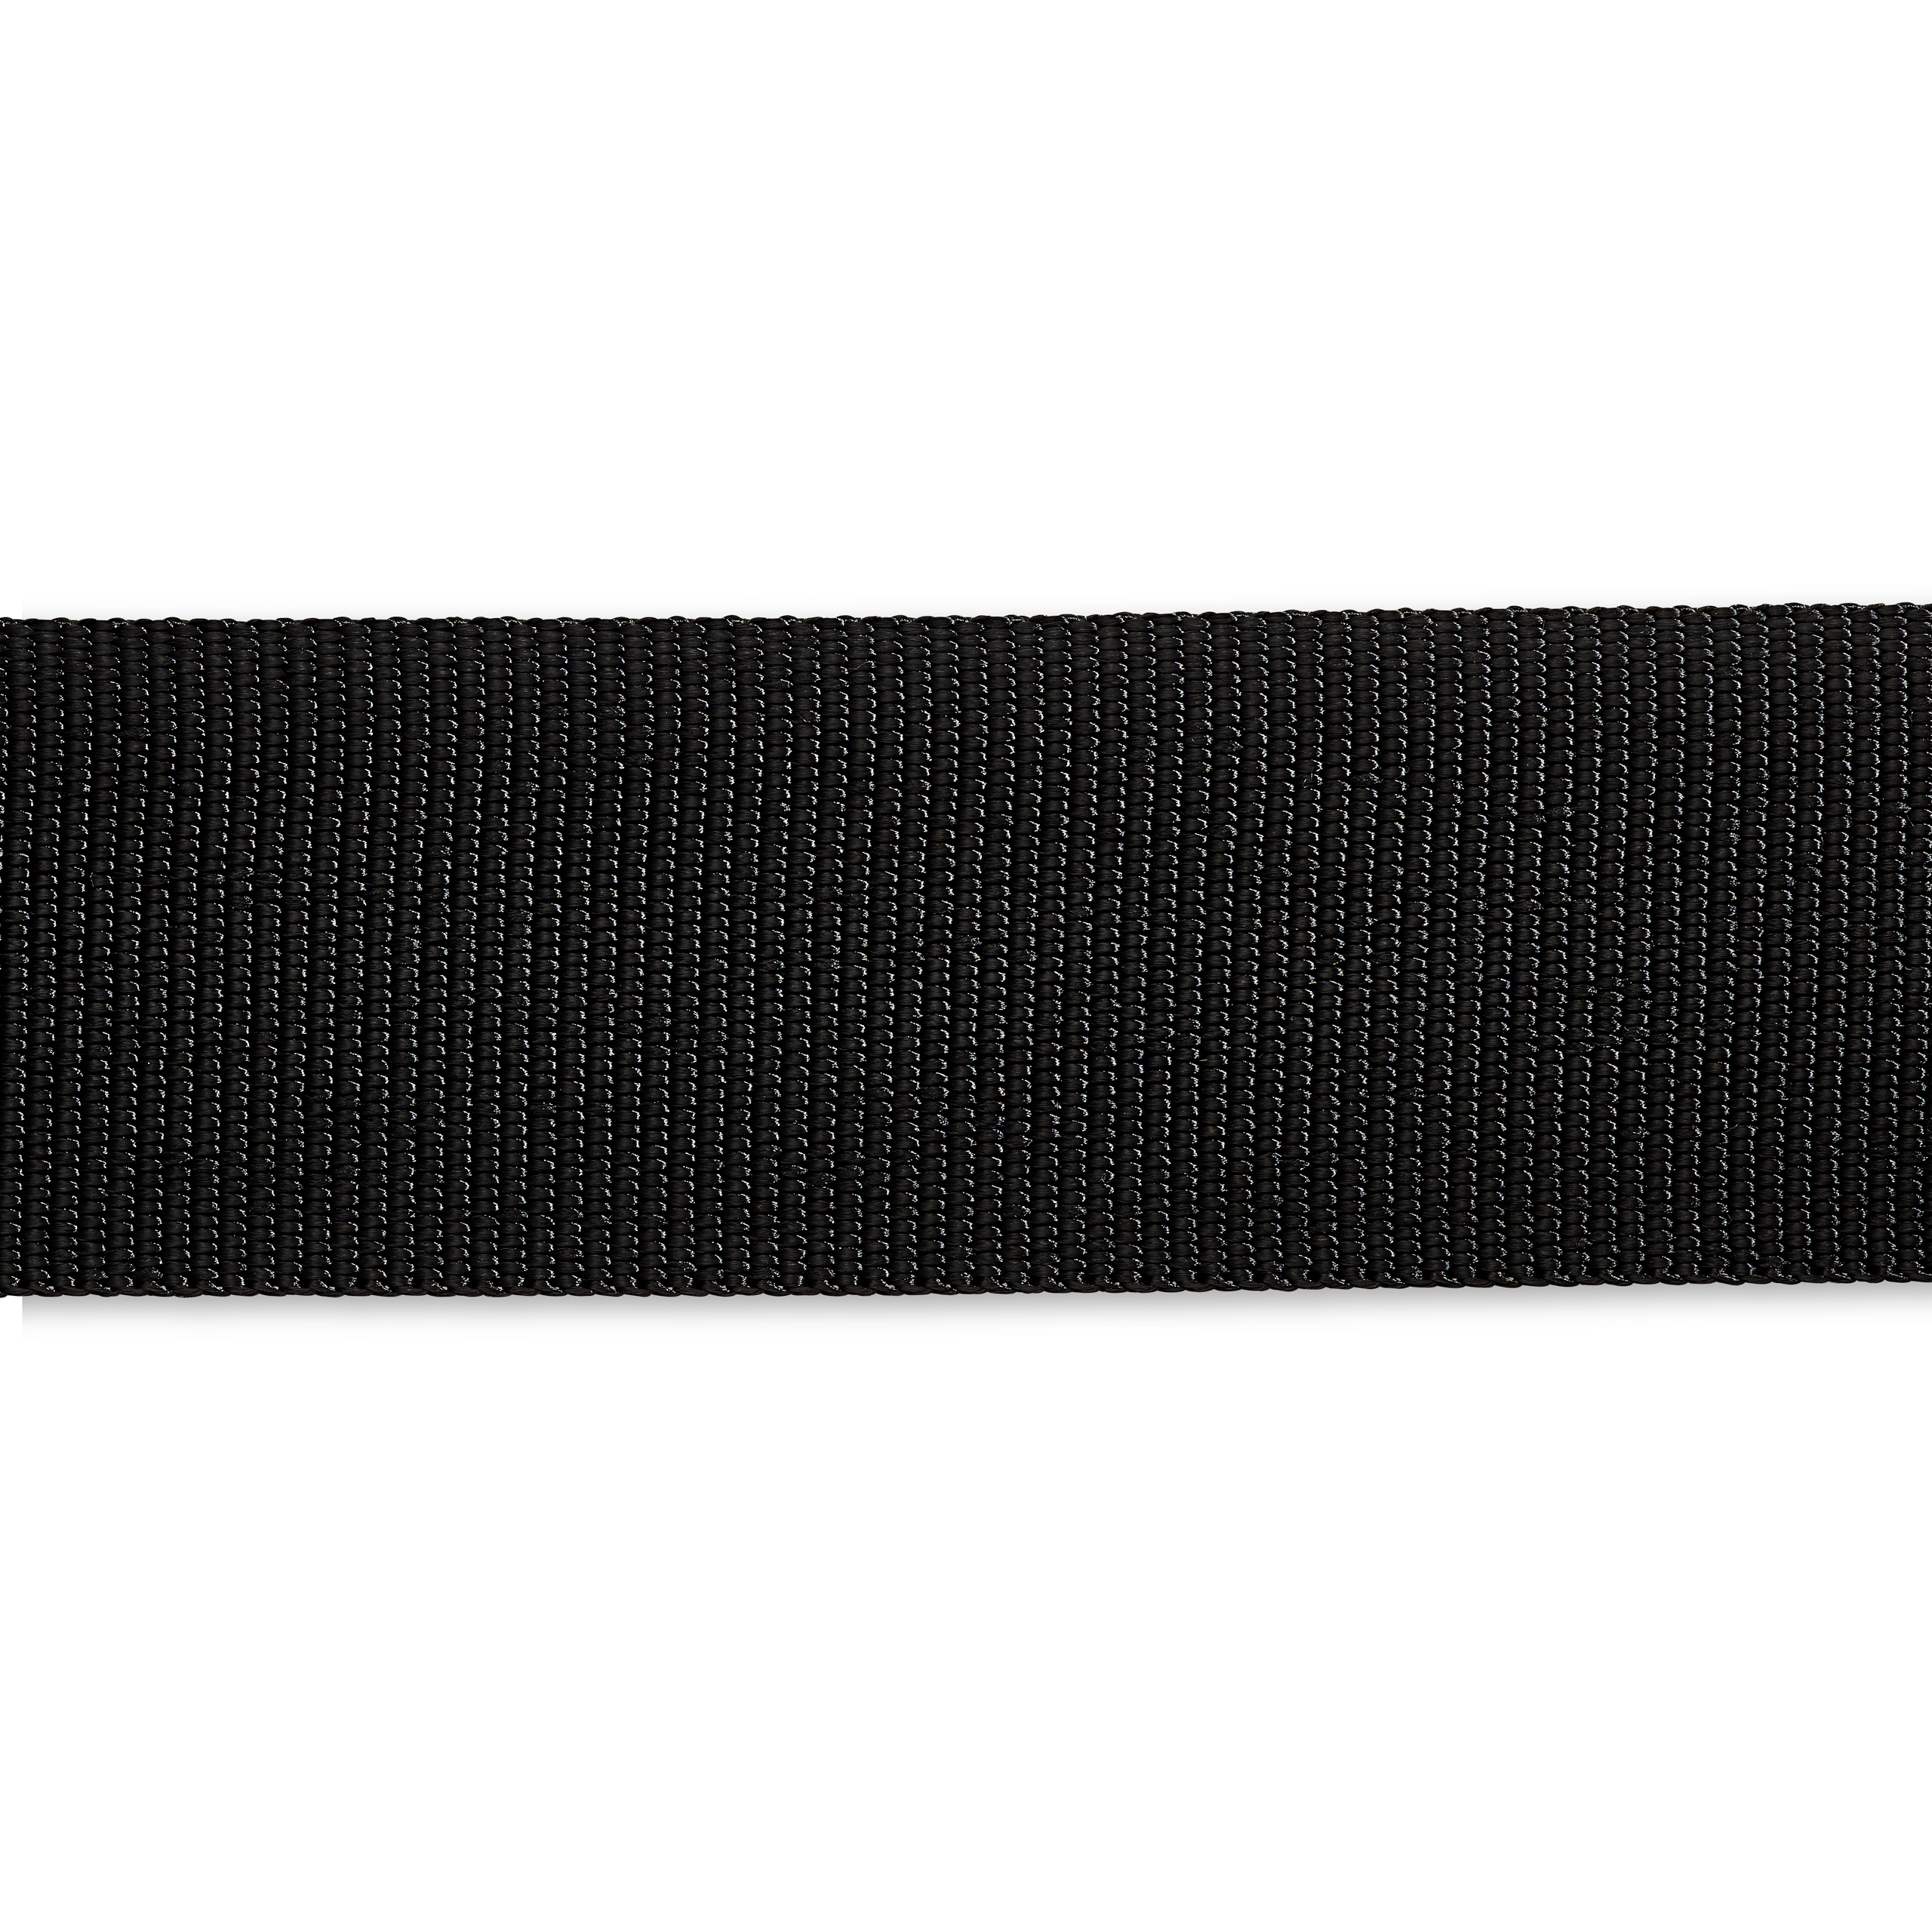 Gurtband für Rucksäcke 50 mm schwarz, Meterware